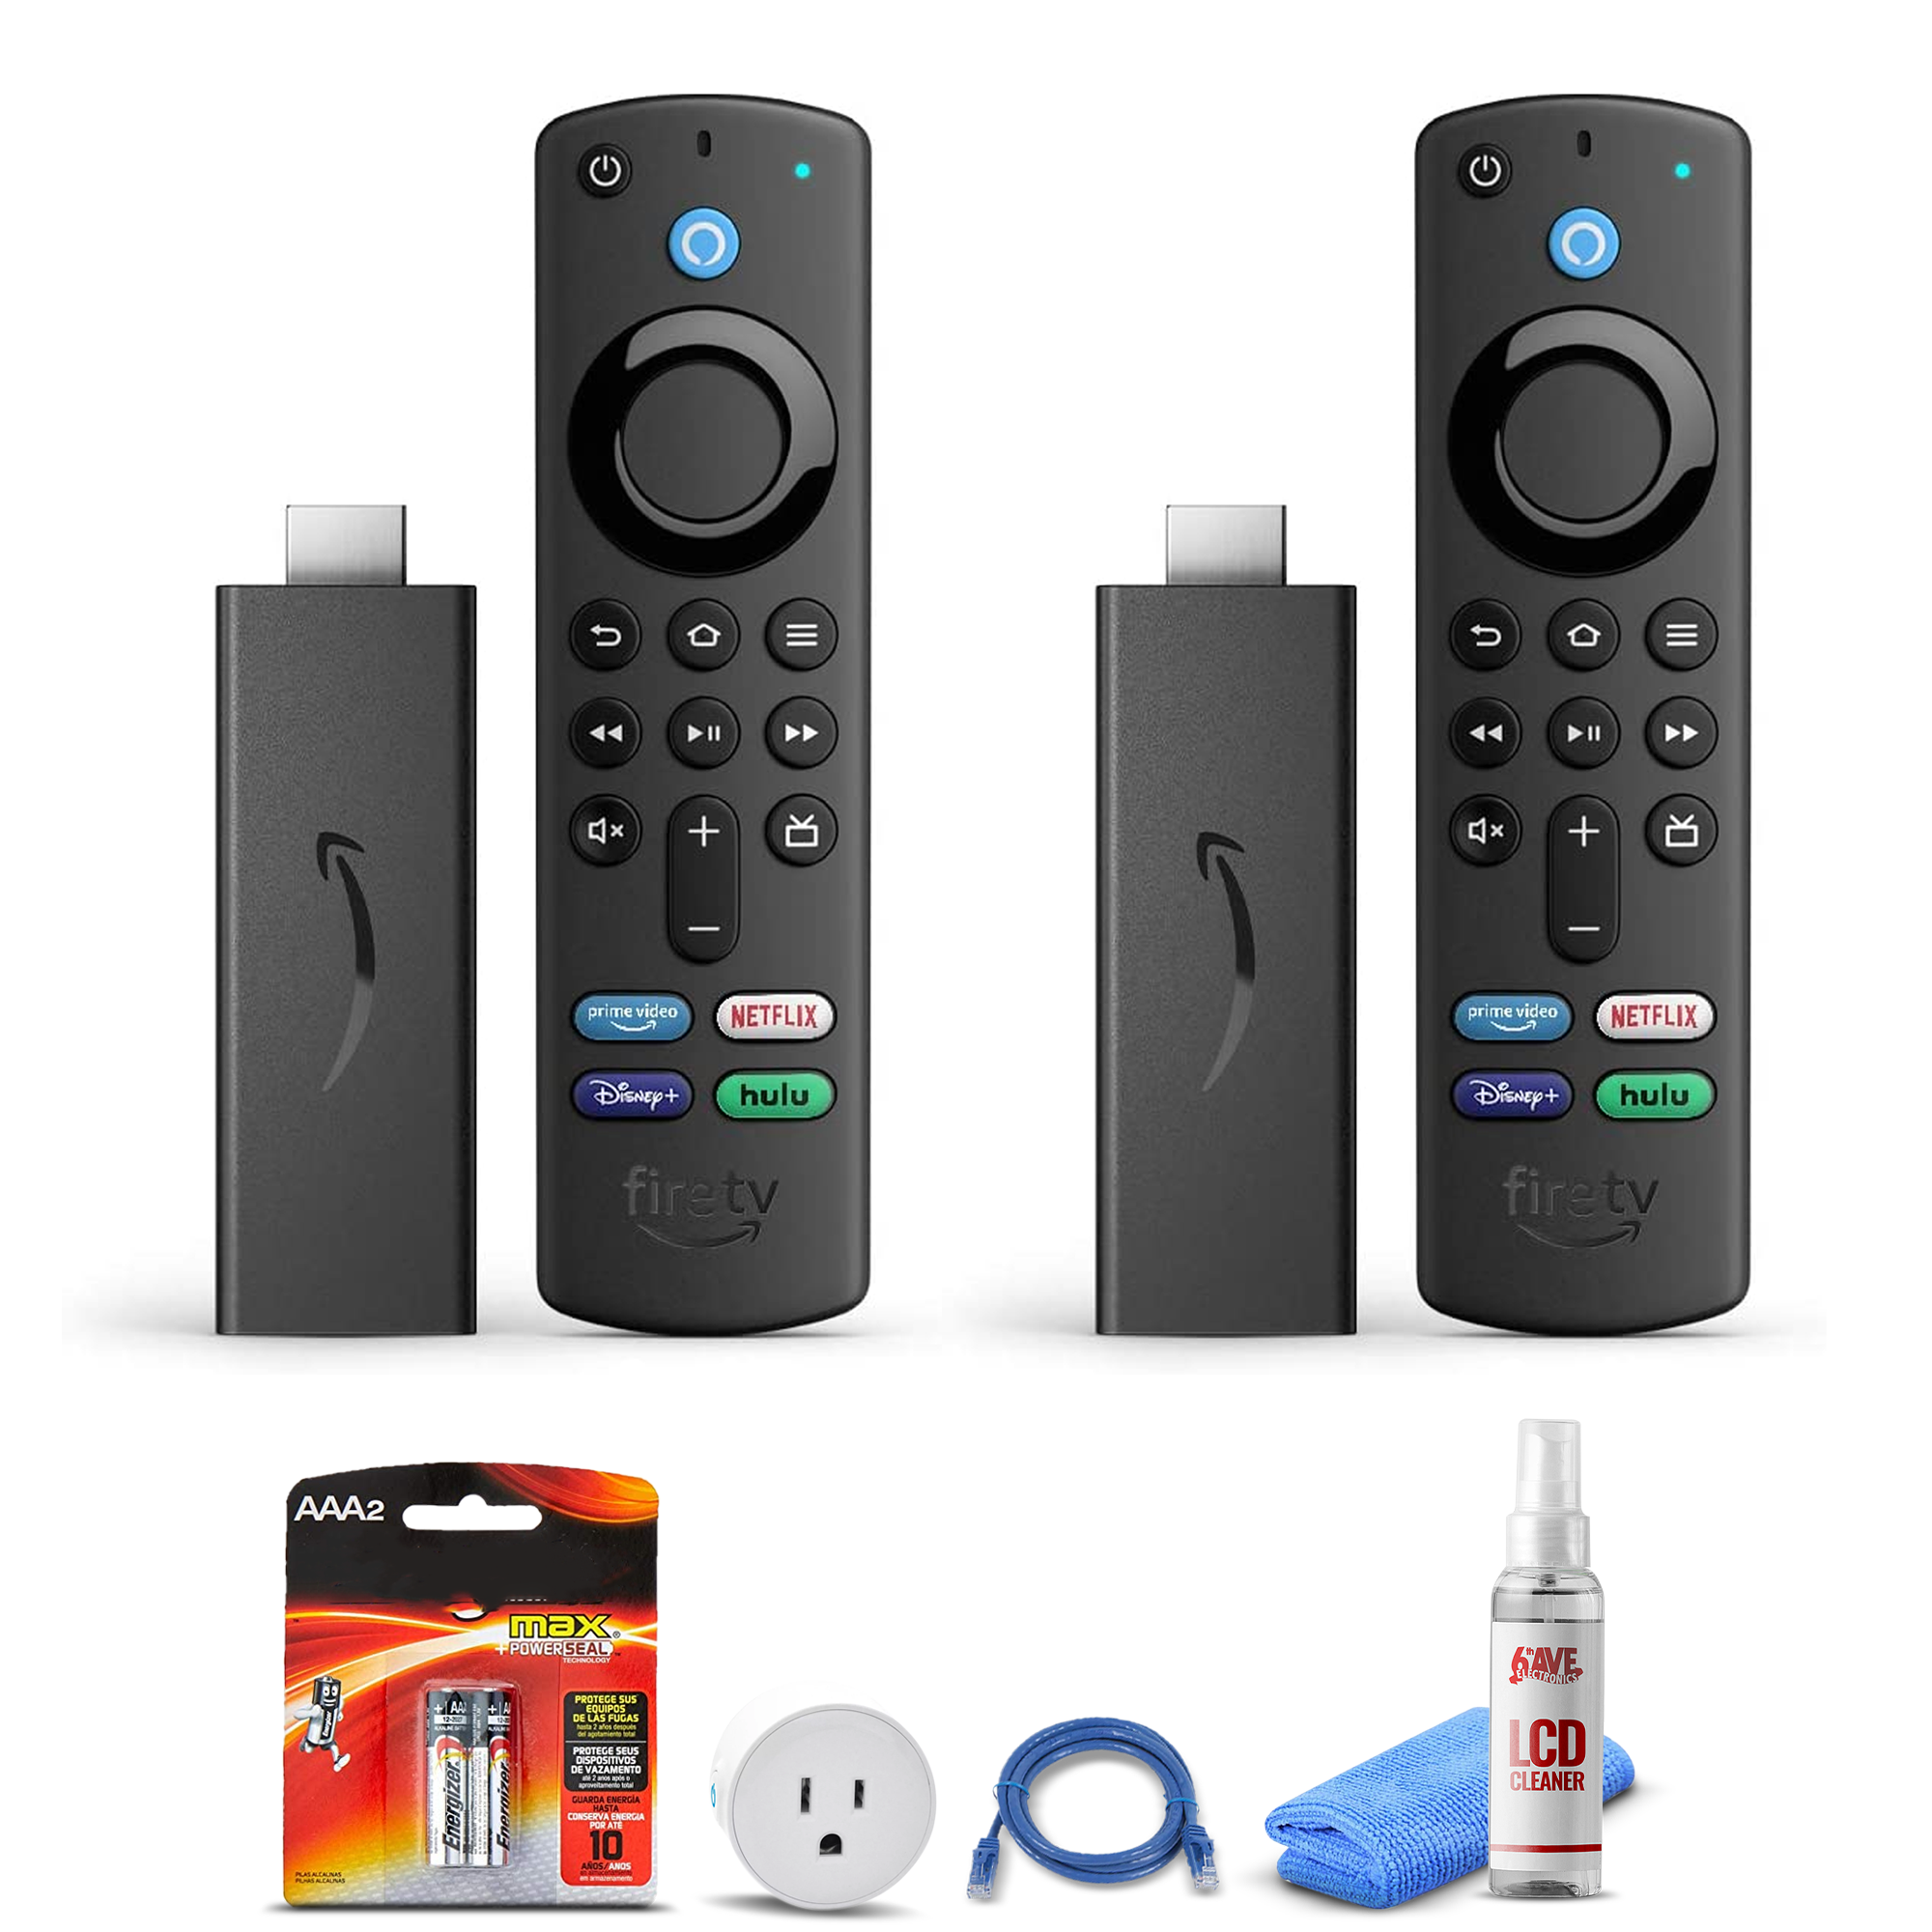 (2) Amazon Fire TV Stick (2021) + Smart Plug + Cat5 Cable + Batteries Bundle